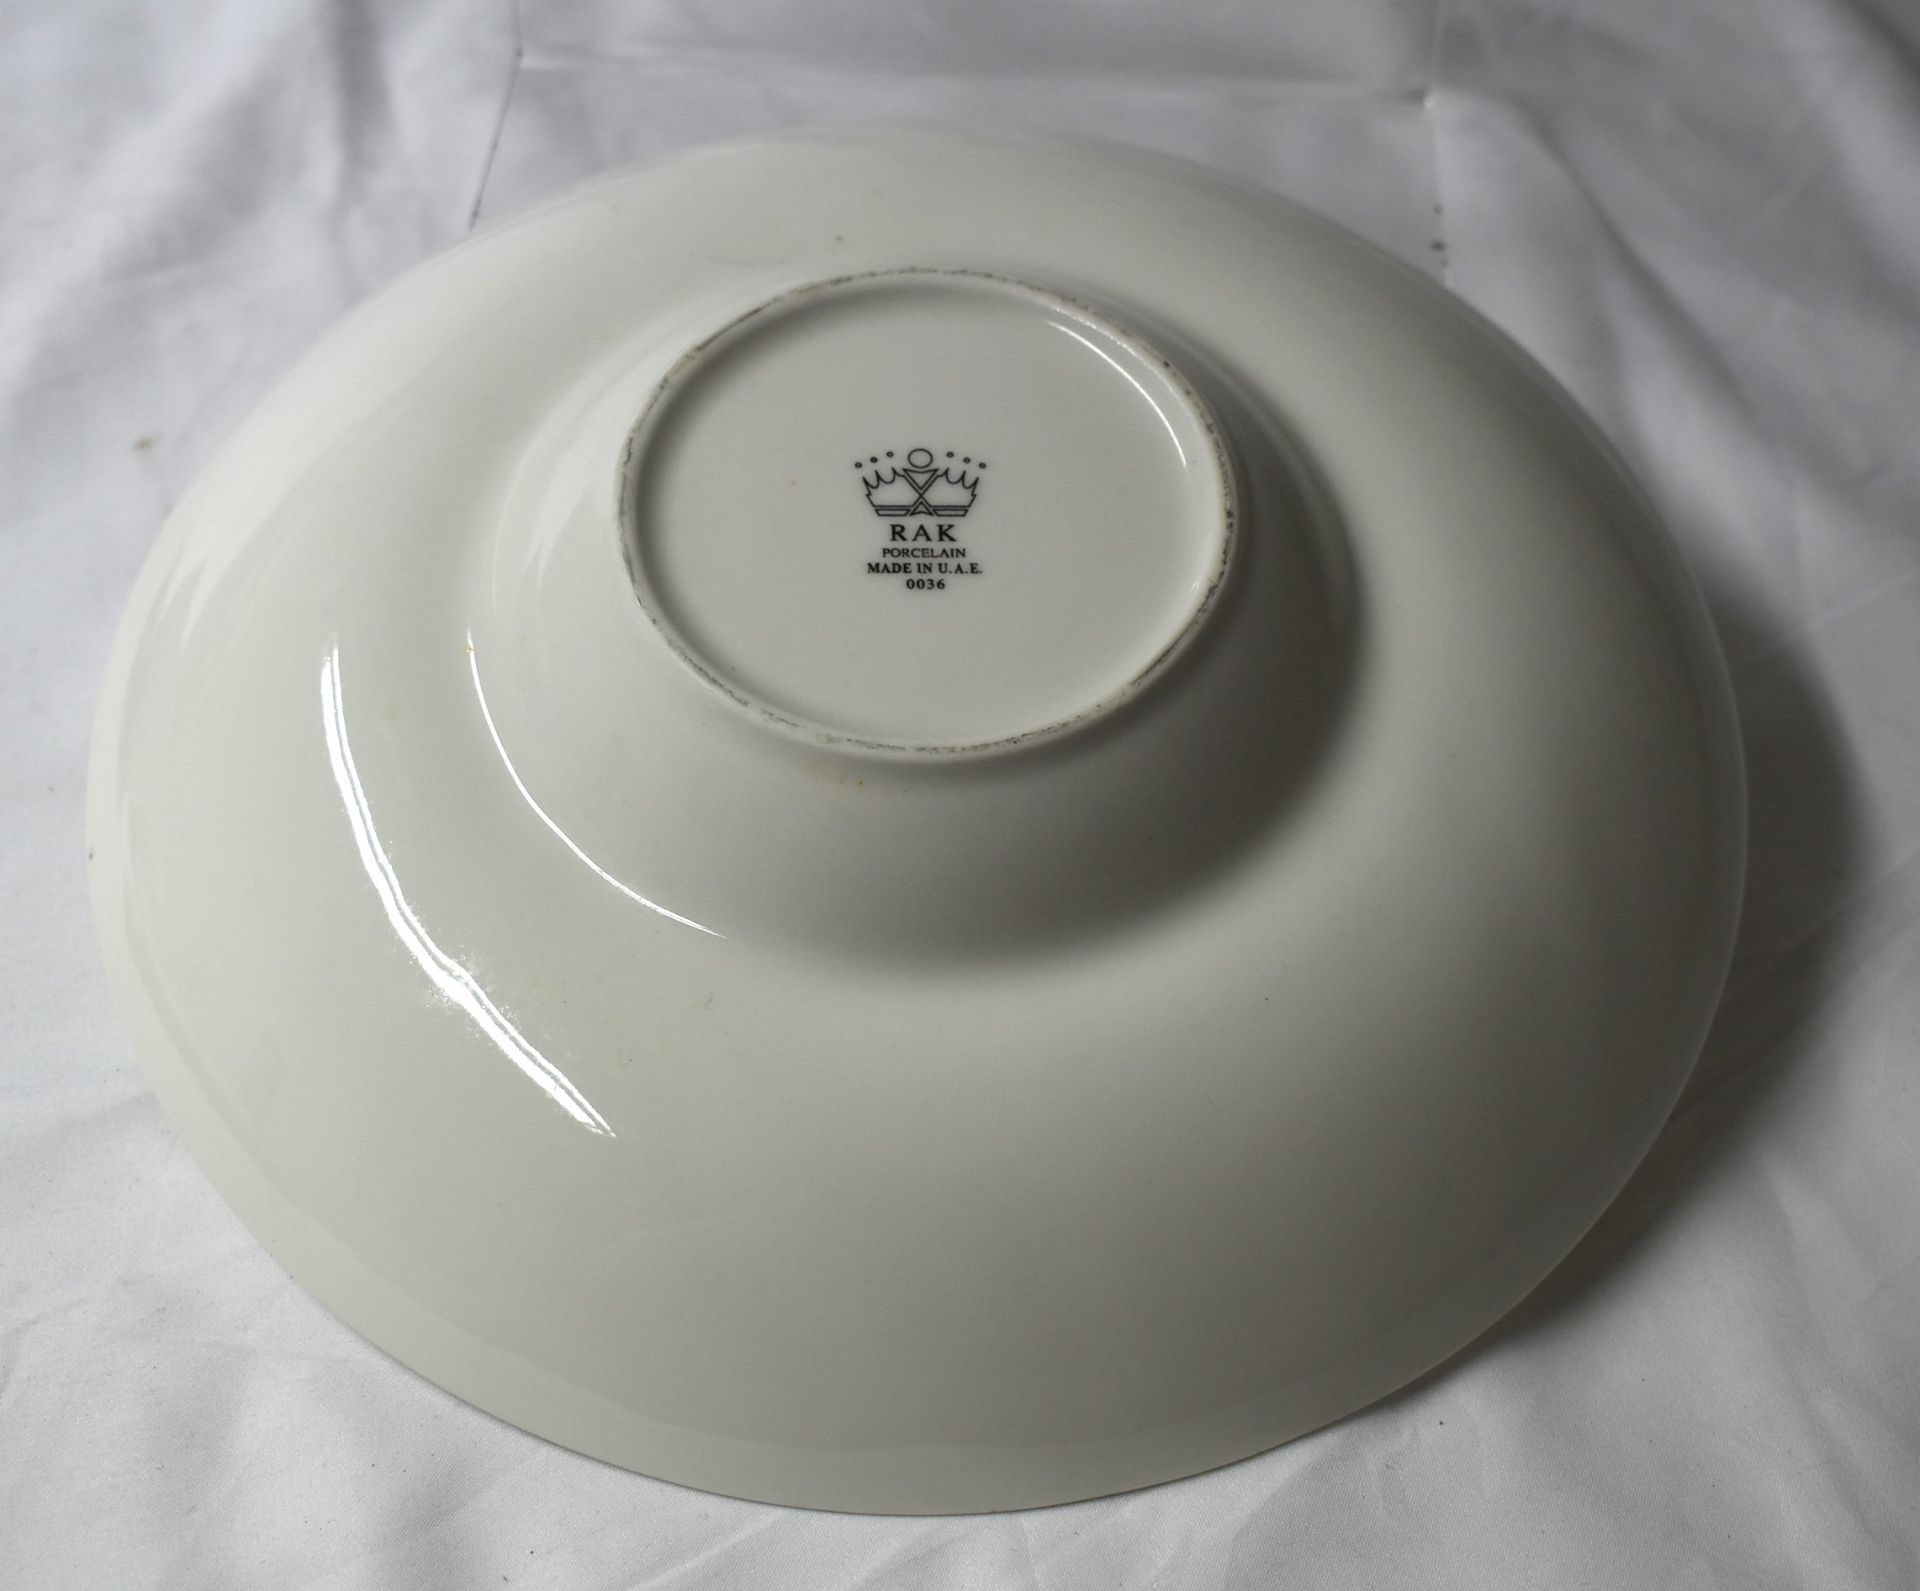 9 x RAK Porcelain Banquet 26cm Ivory Porcelain Wide Rim Soup Bowls - CL011 - Ref: PX278 - - Image 2 of 6